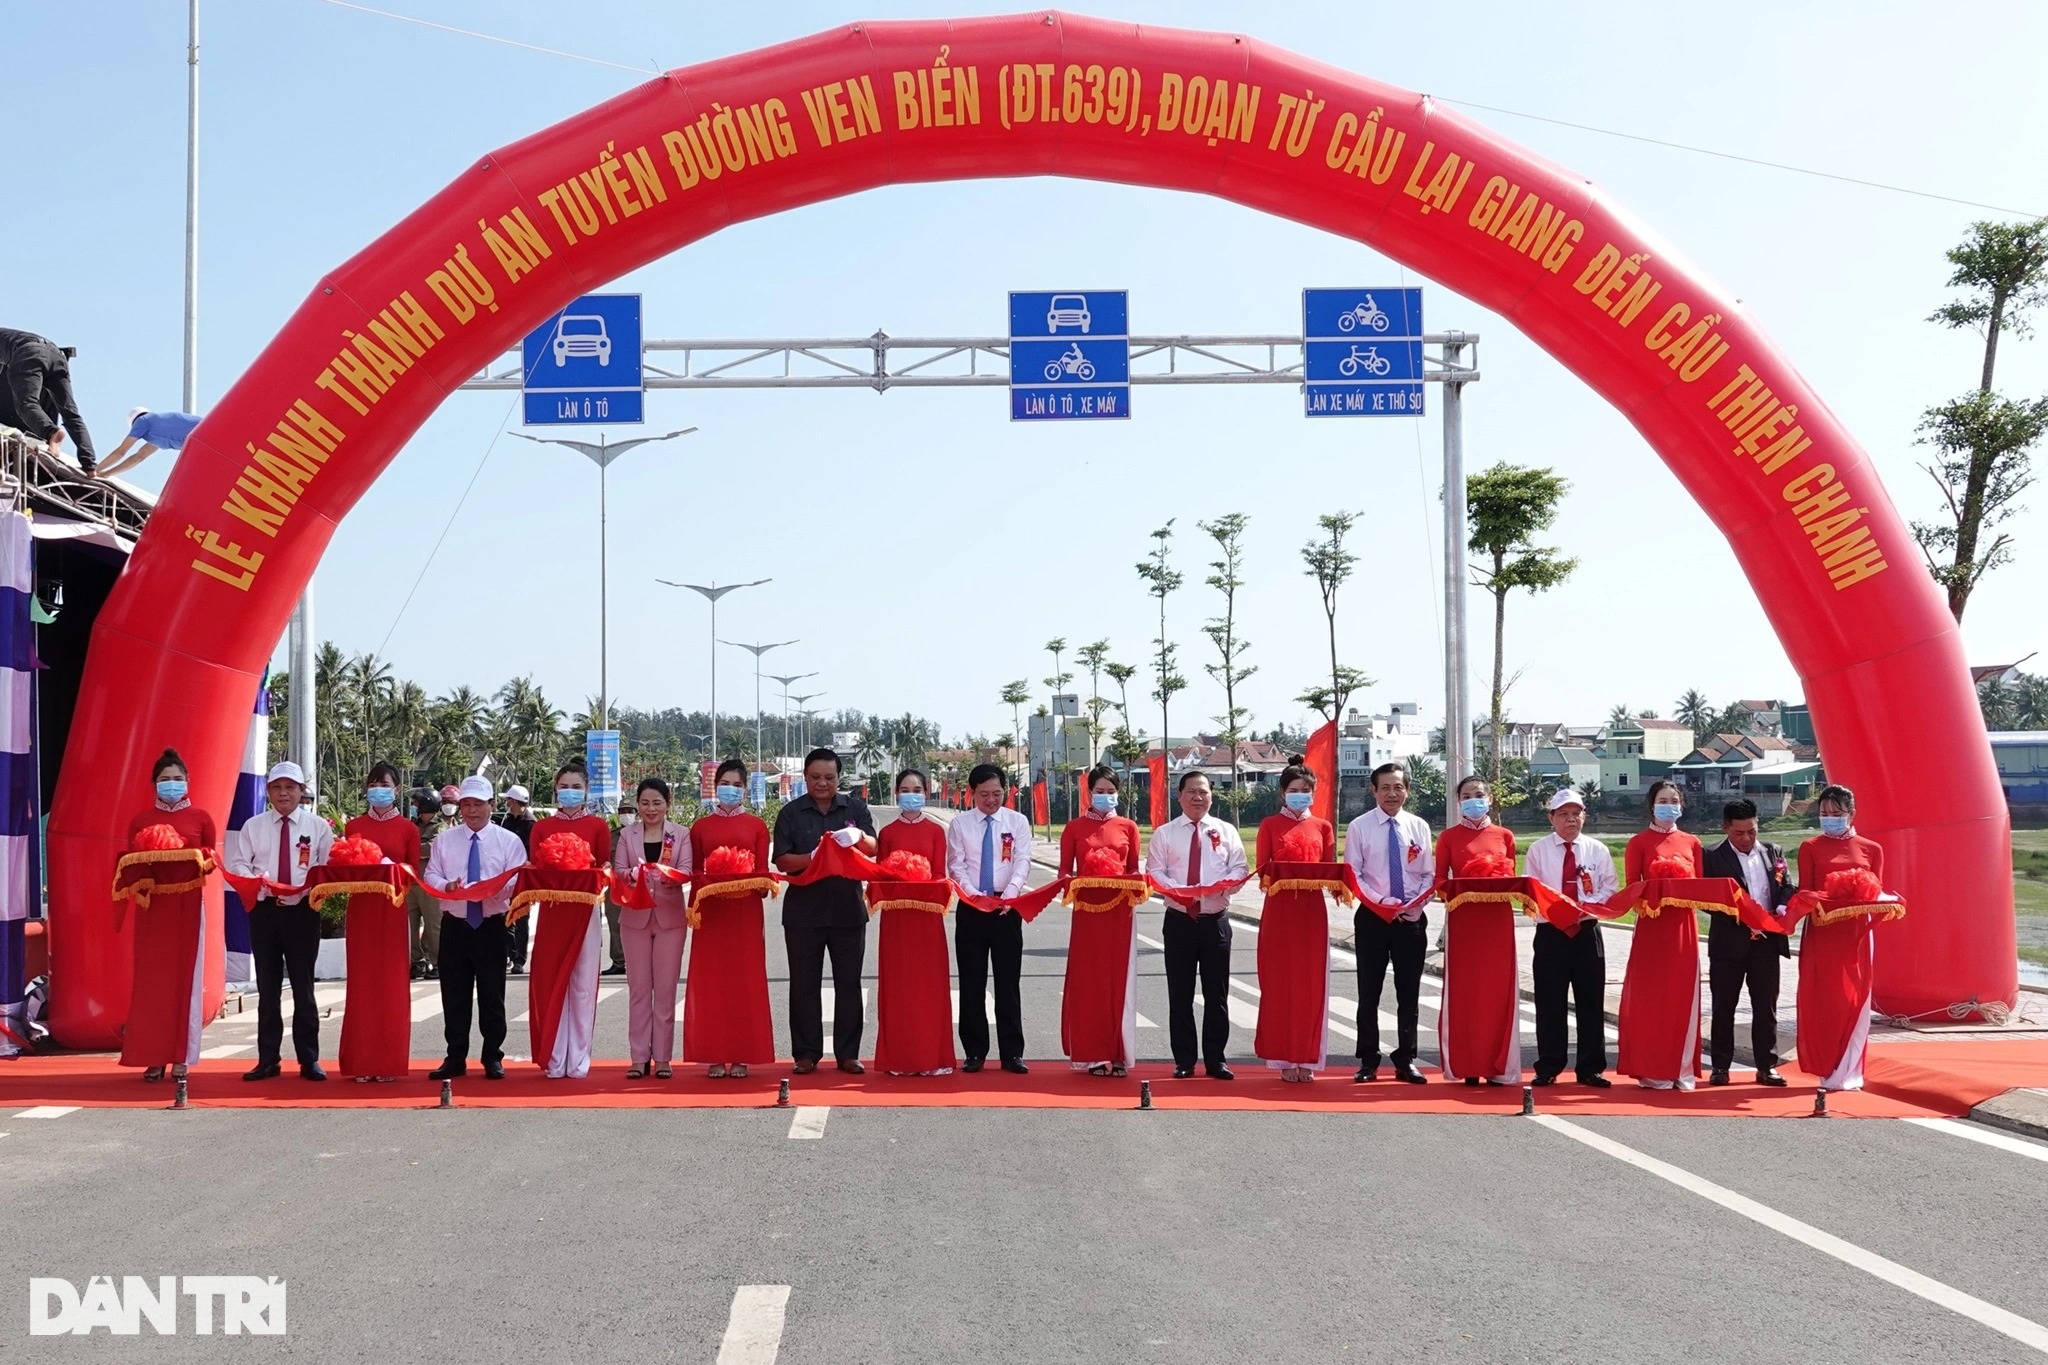 Bình Định khởi công tuyến đường ven biển 700 tỷ đồng dài 7km - 2